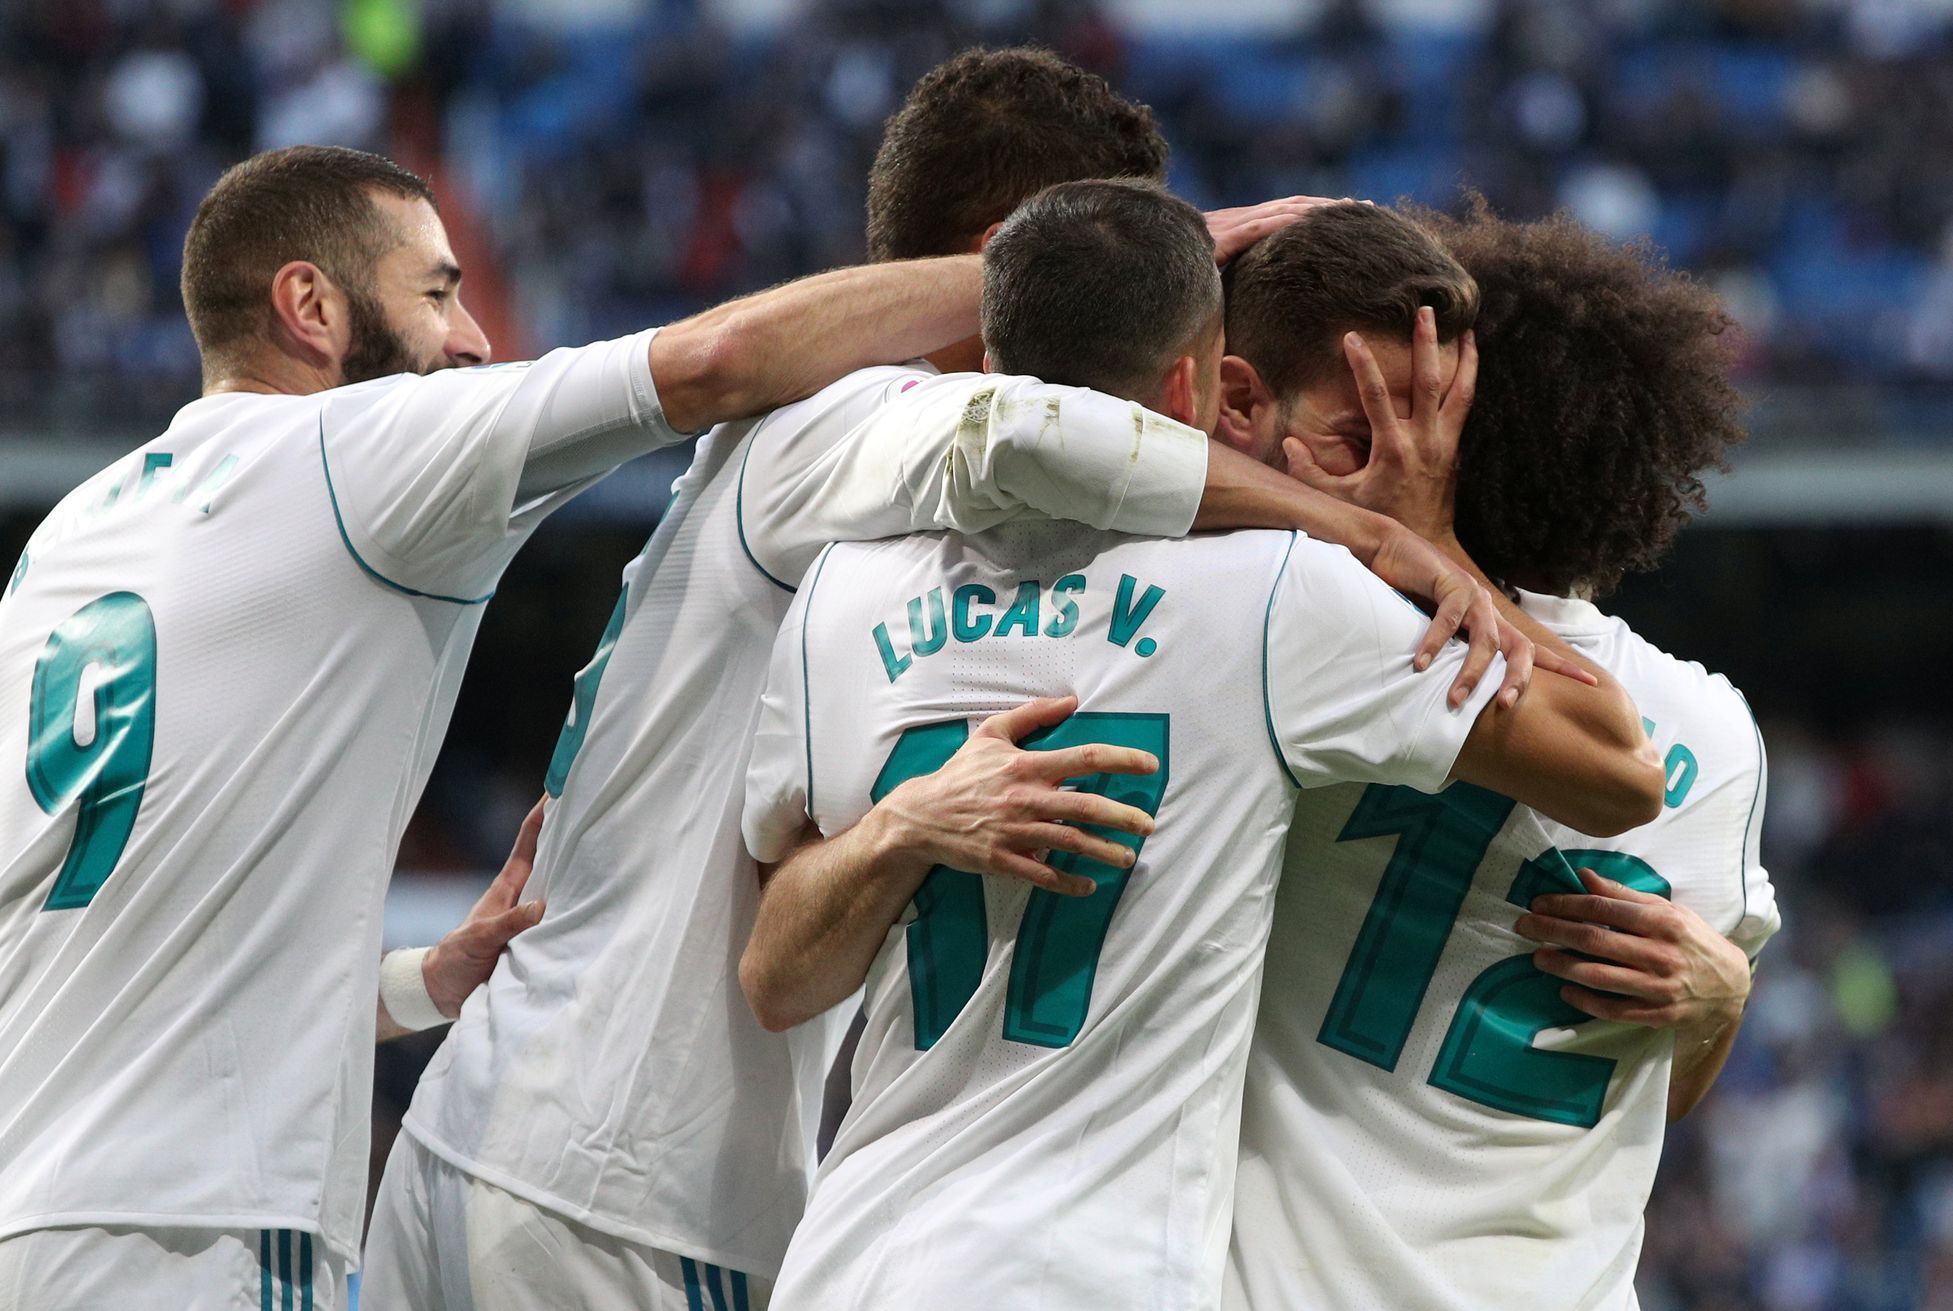 Radost fotbalistů Realu Madrid